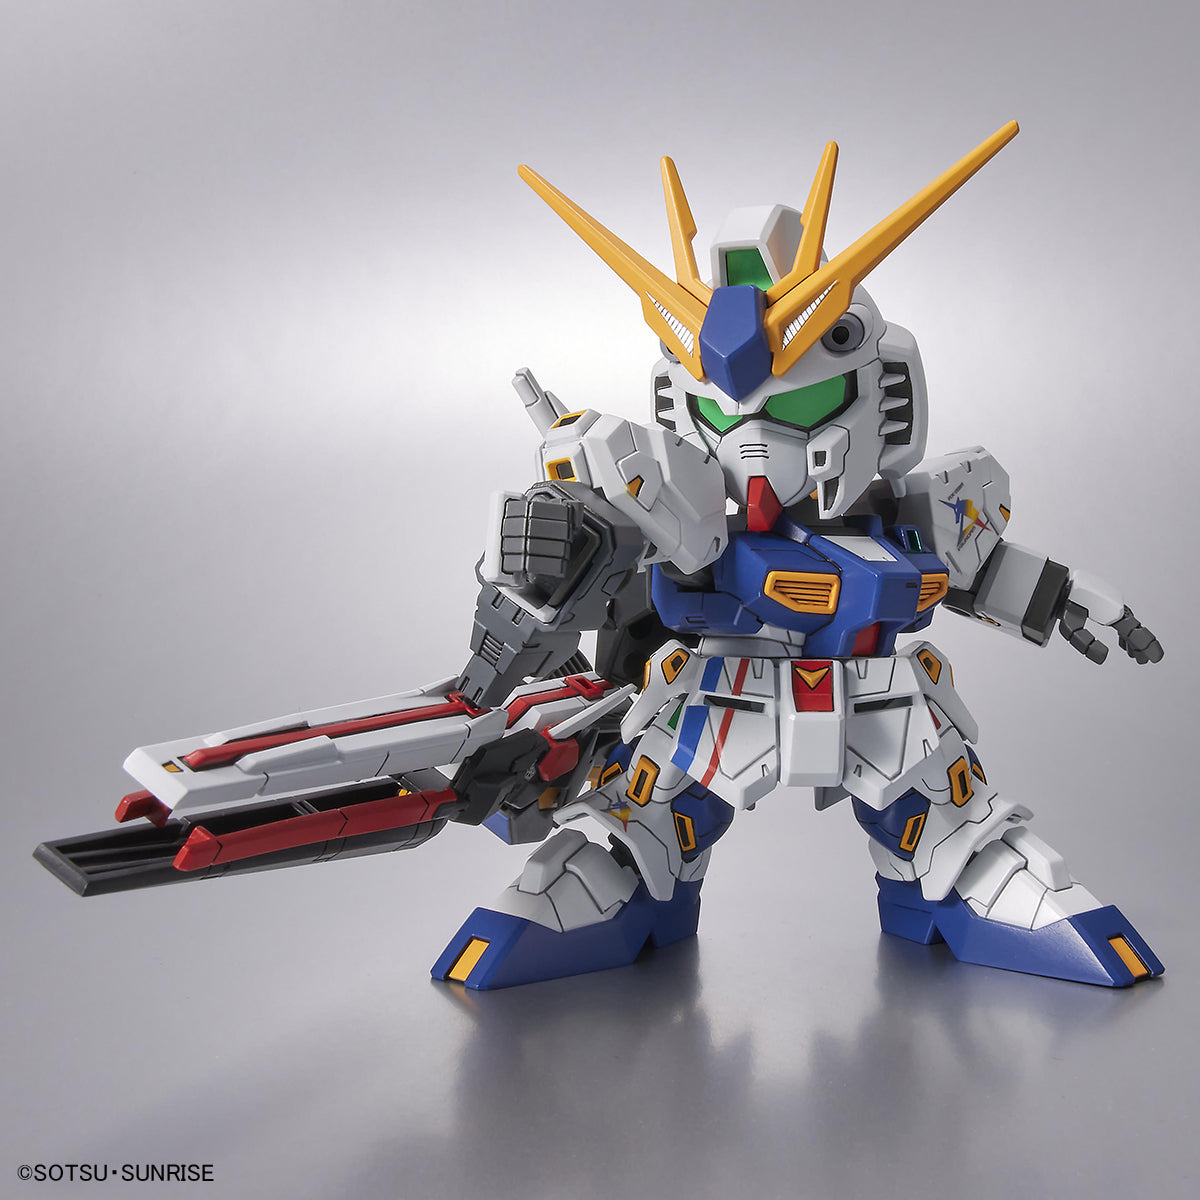 PREVENTA SD BB Senshi RX-93ff Nu Gundam